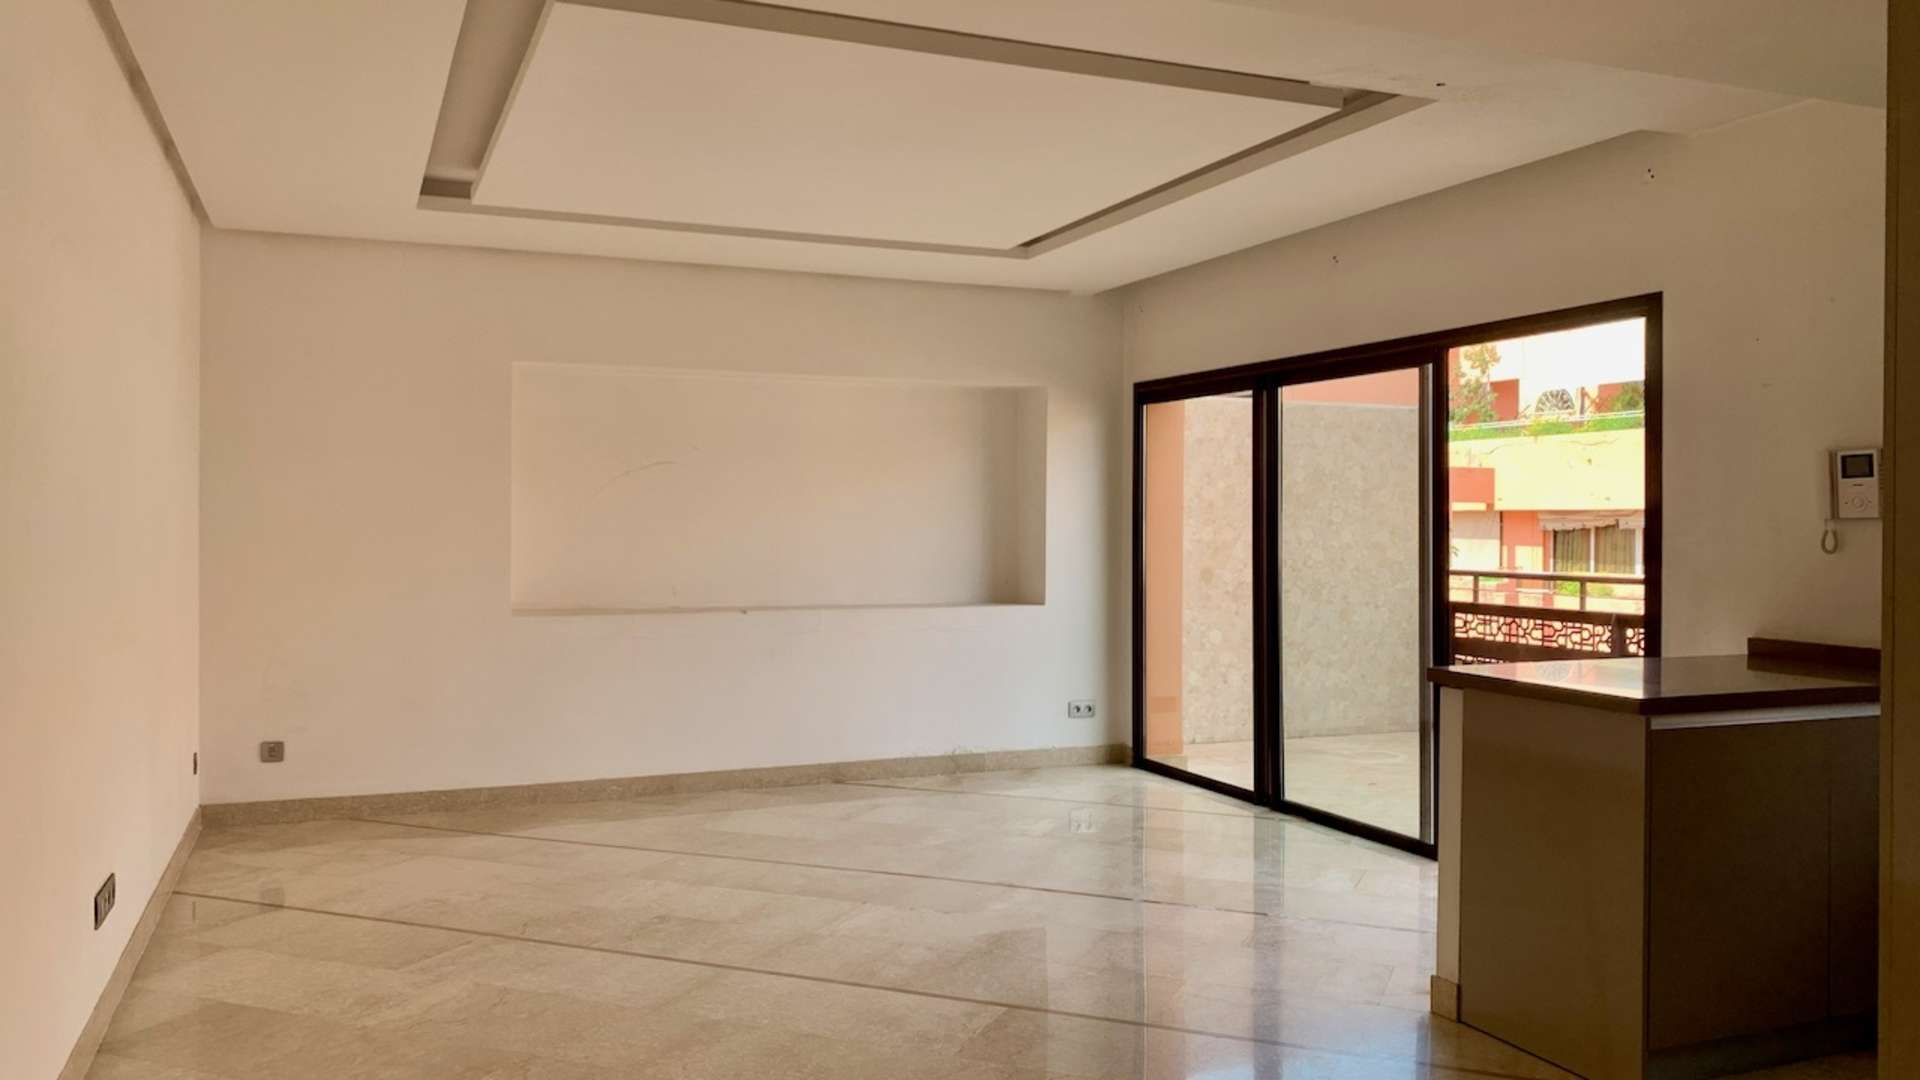 Vente,Appartement,Appartement situé dans l'une des plus prestigieuses résidences de Guéliz.,Marrakech,Guéliz